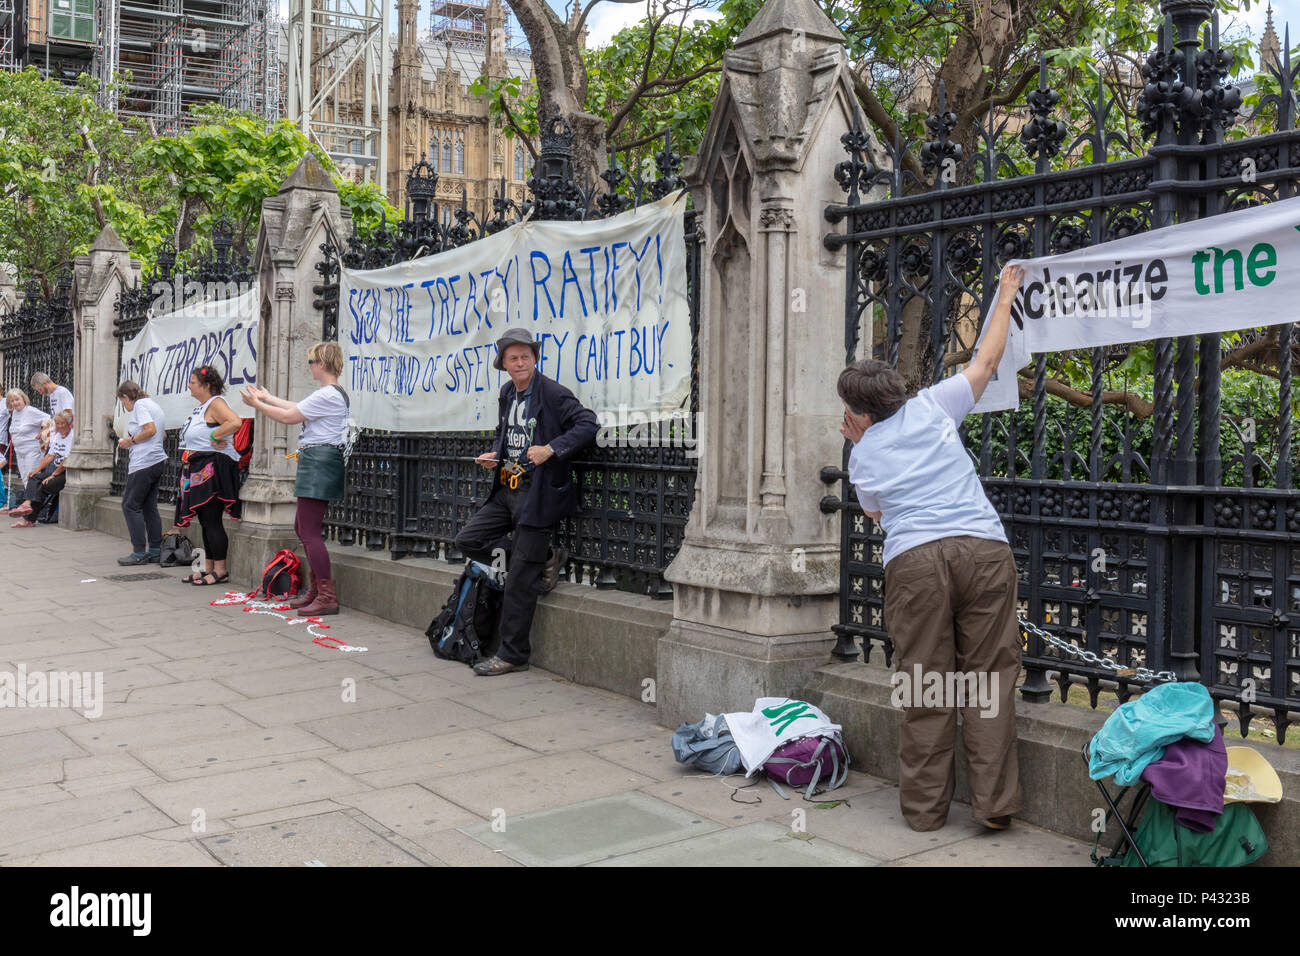 Westminster, London, UK, 20. Juni 2018; Demonstranten Kette selbst zu Geländer außerhalb des Parlaments zu drängen, dass Großbritannien Unterzeichnet Die UN Global Verbot von Atomwaffen Credit: Ian Stewart/Alamy leben Nachrichten Stockfoto